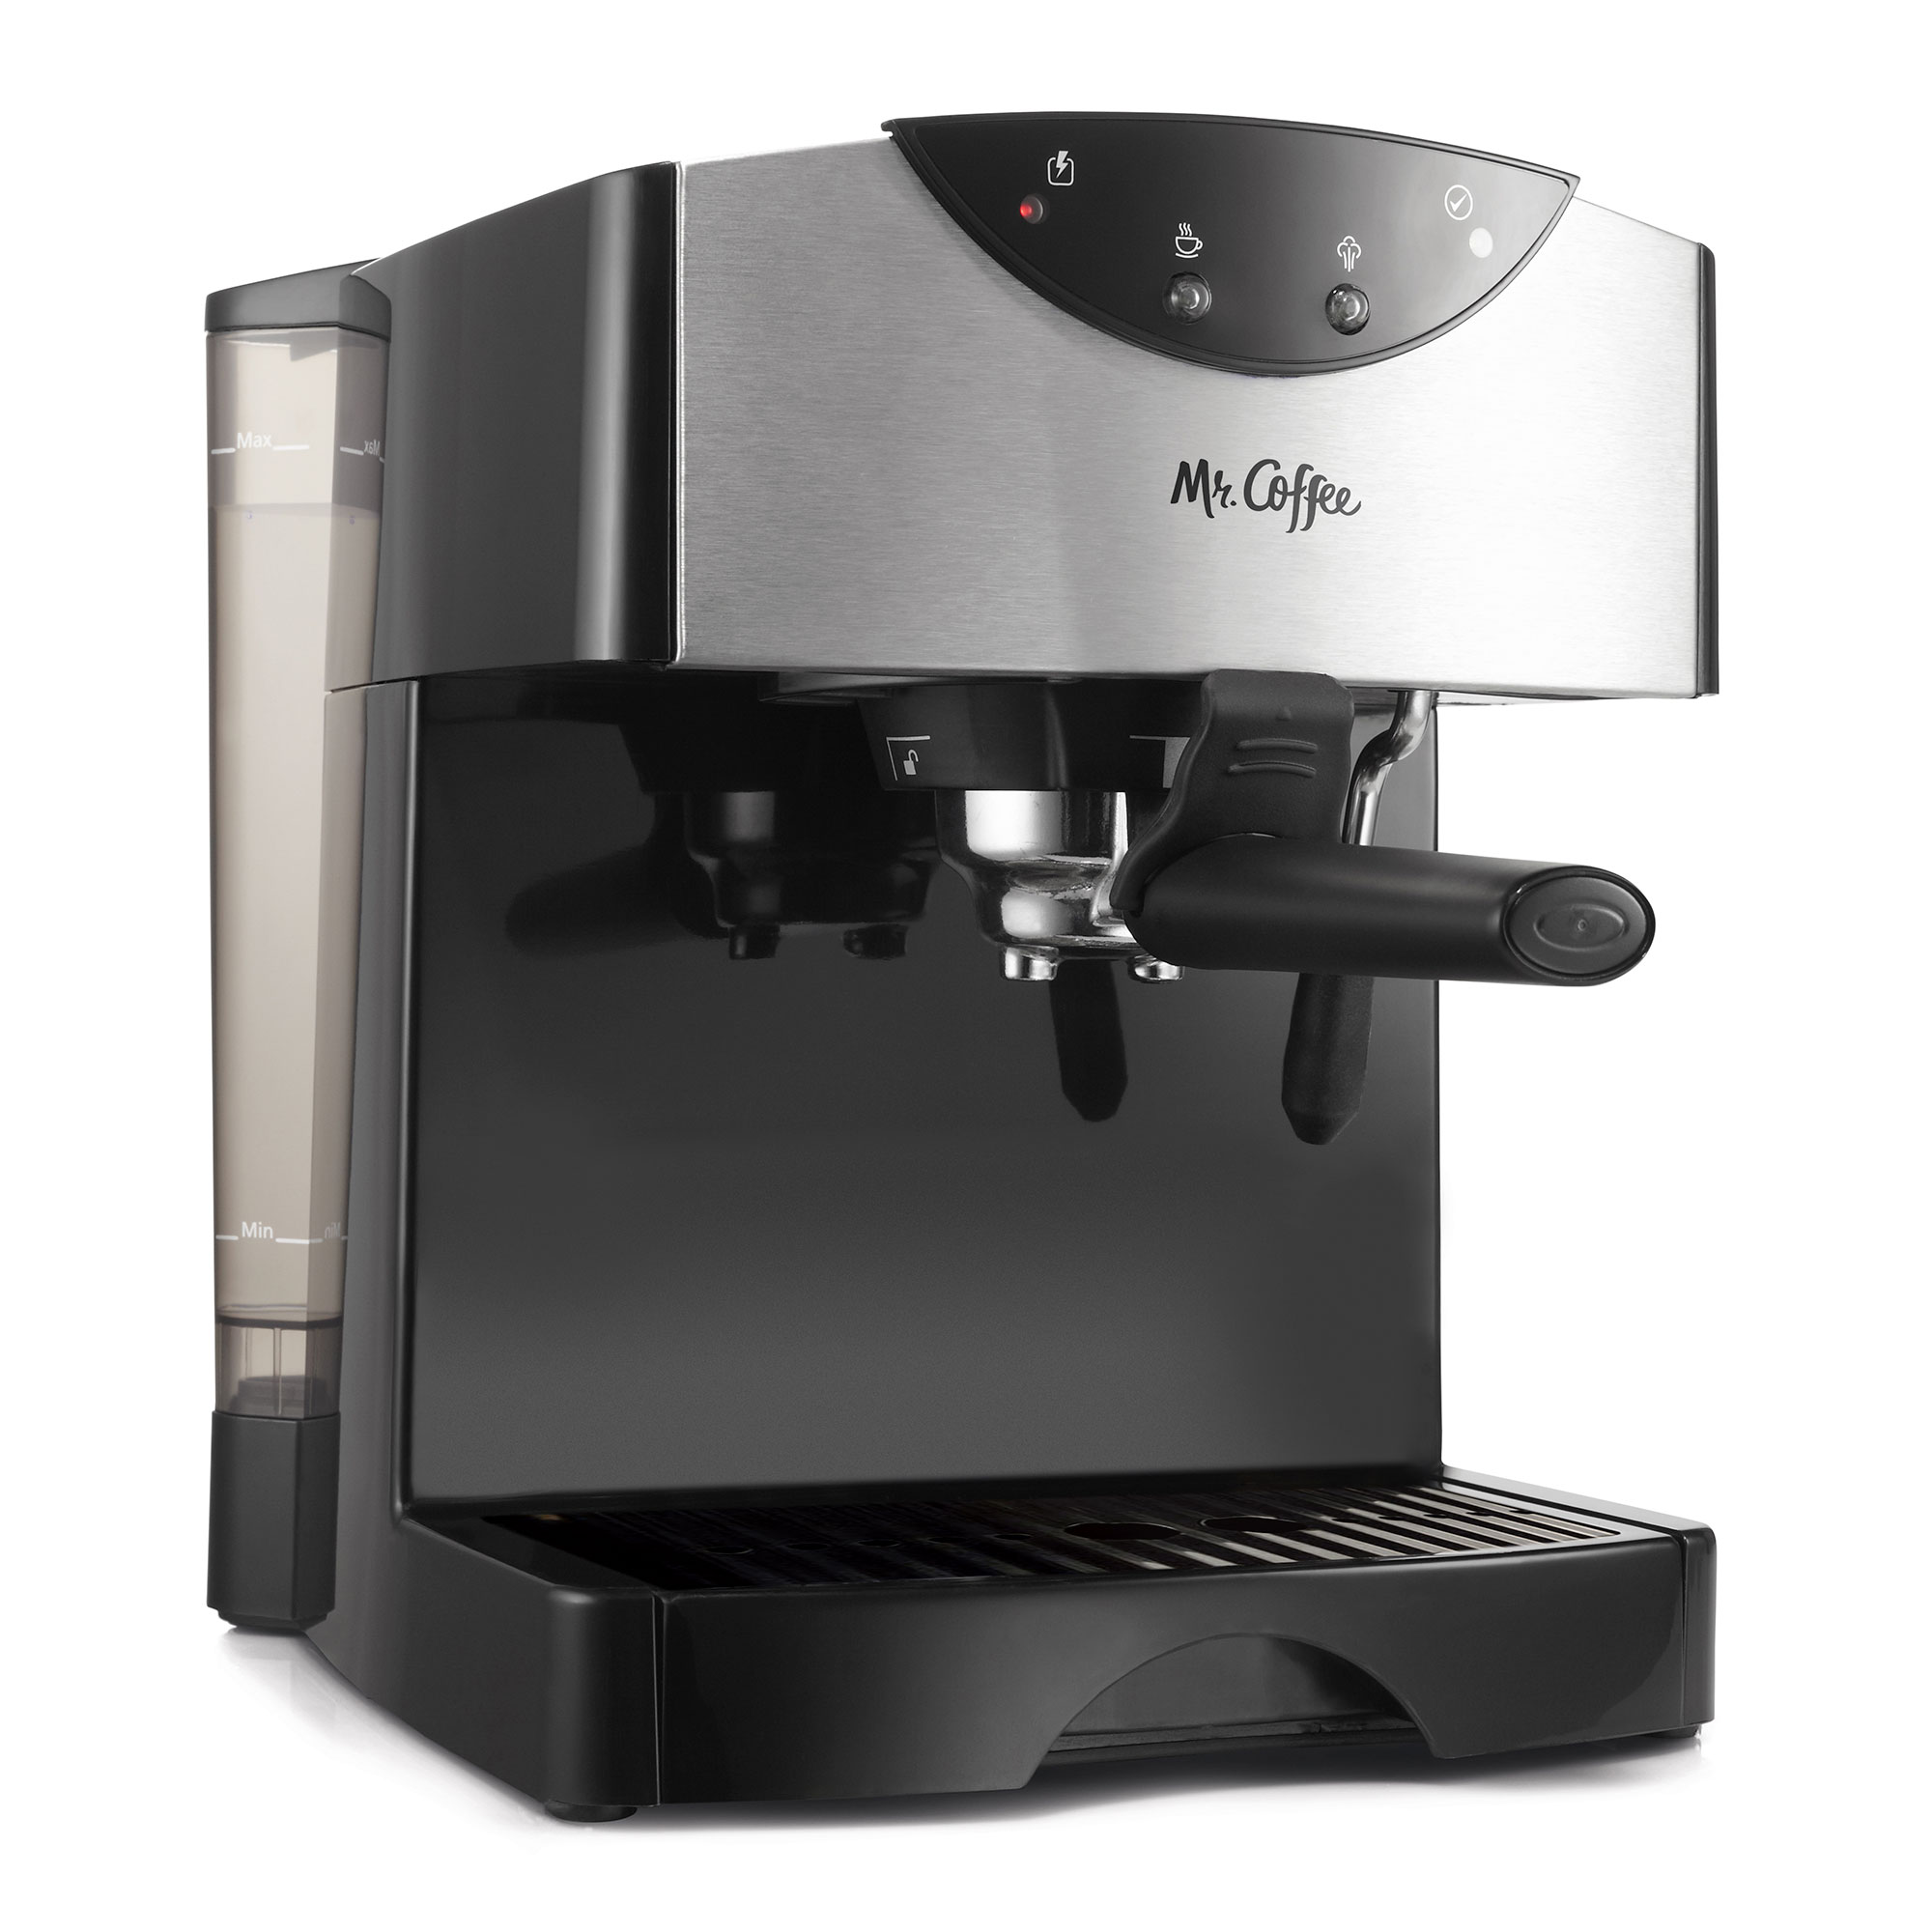 Mr. Coffee 2 Shot Pump Espresso & Cappuccino Maker, Black - image 2 of 8